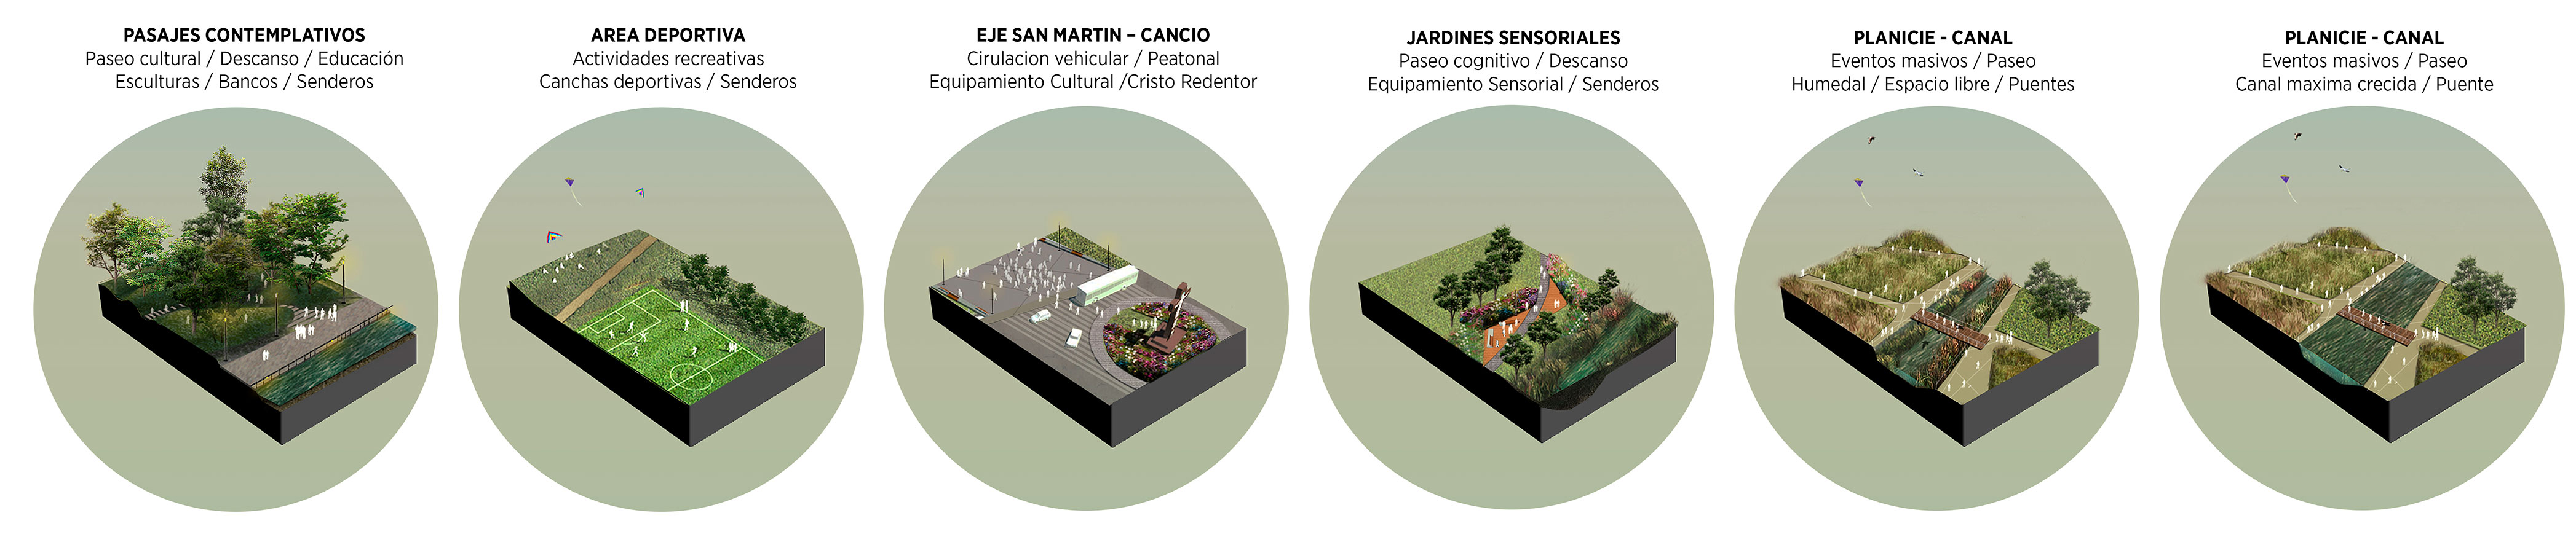 Proyecta Bolívar / Imagina el Parque - Diseño urbano